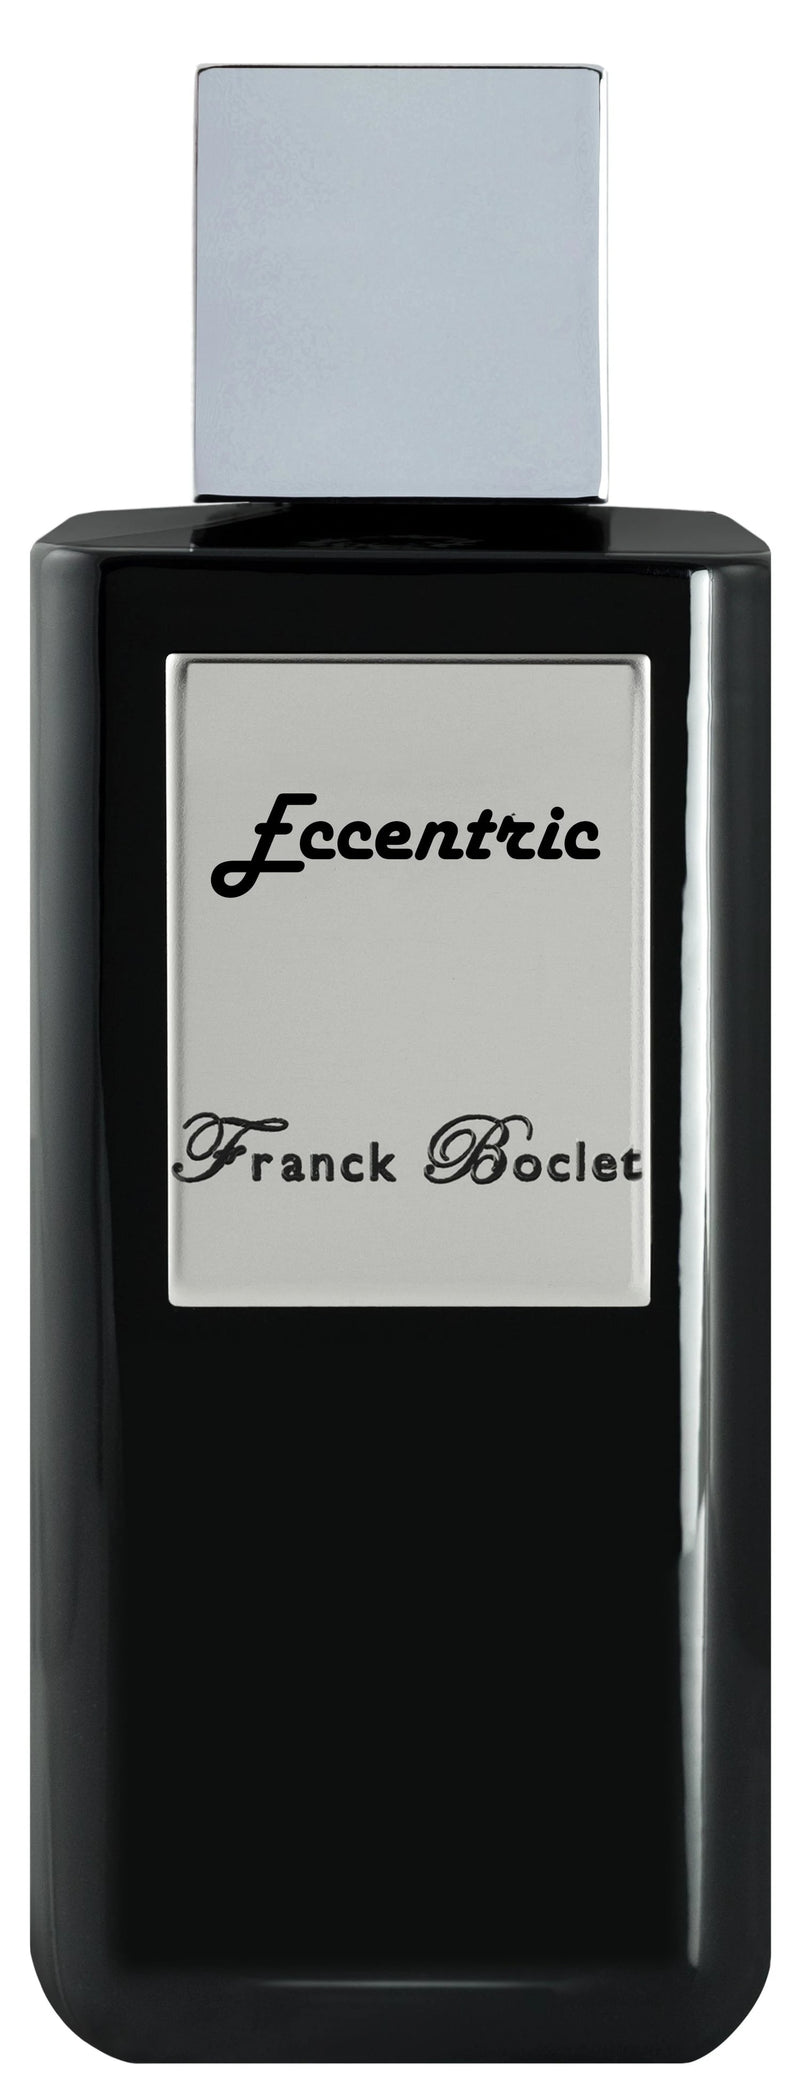 Franck Boclet Eccentric Extrait de Parfum 100мл